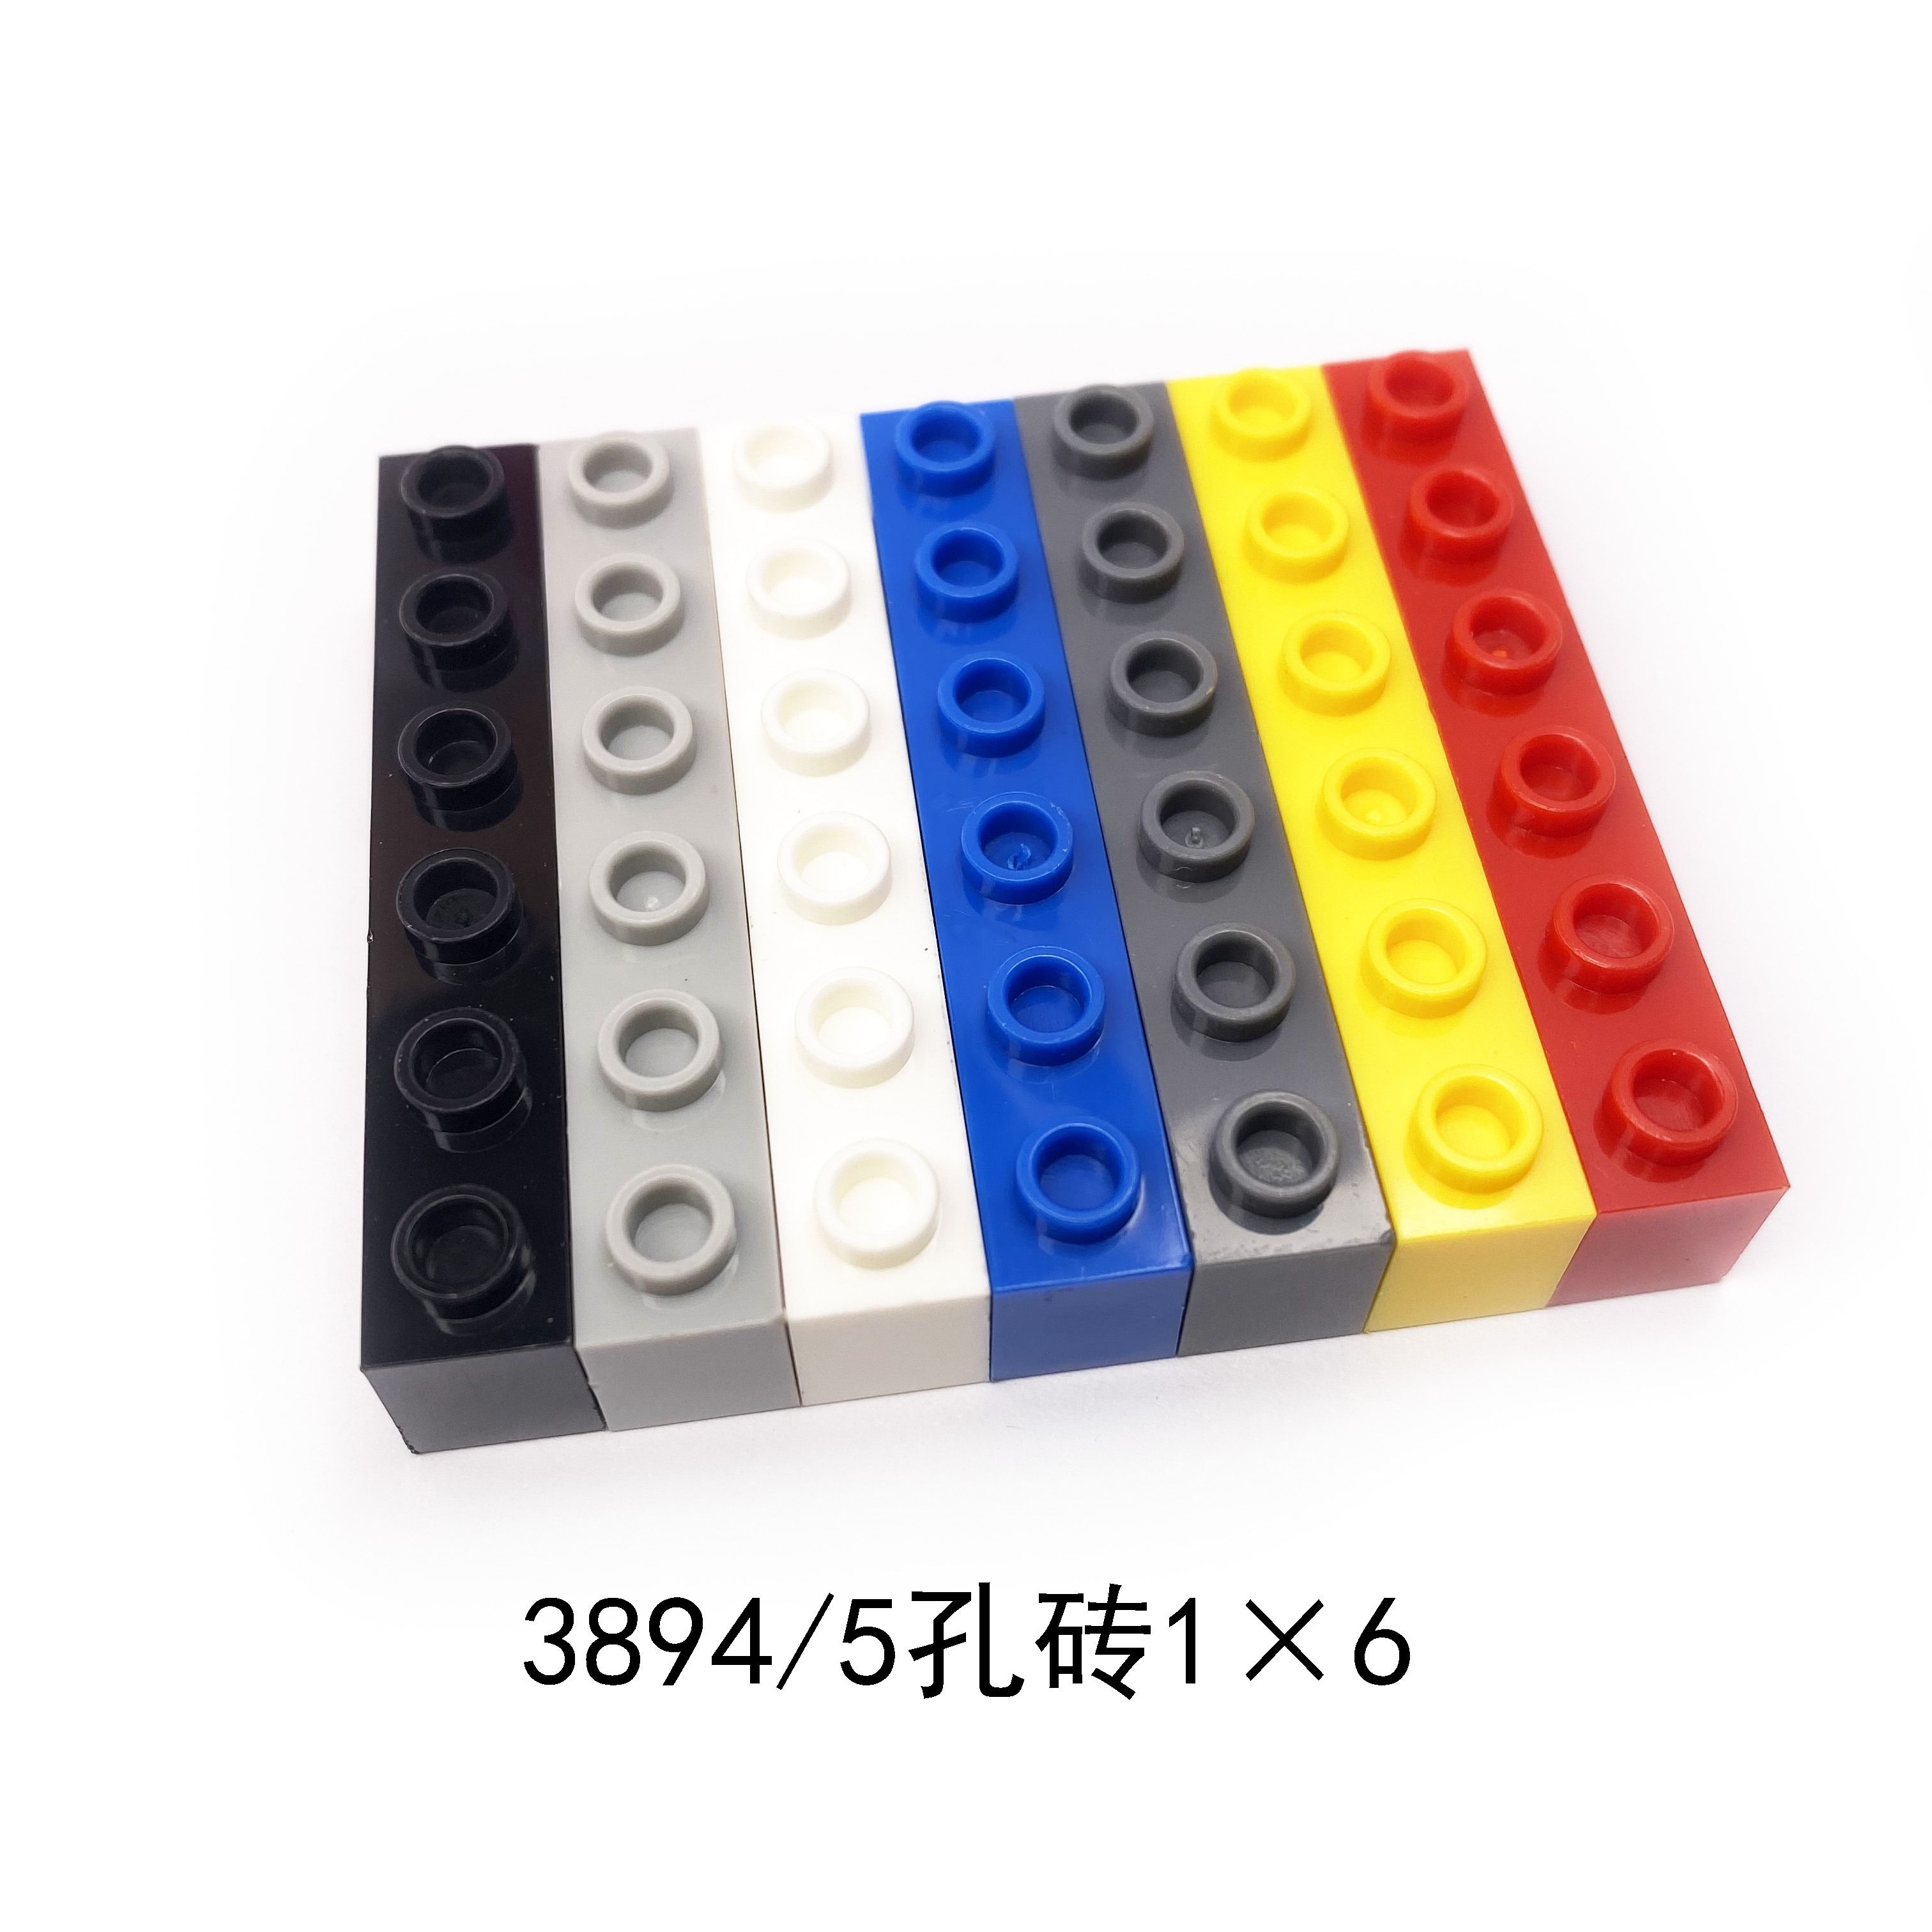 中国积木3894方梁1x6带5孔砖积木科技机械零配件教具散装配件颗粒